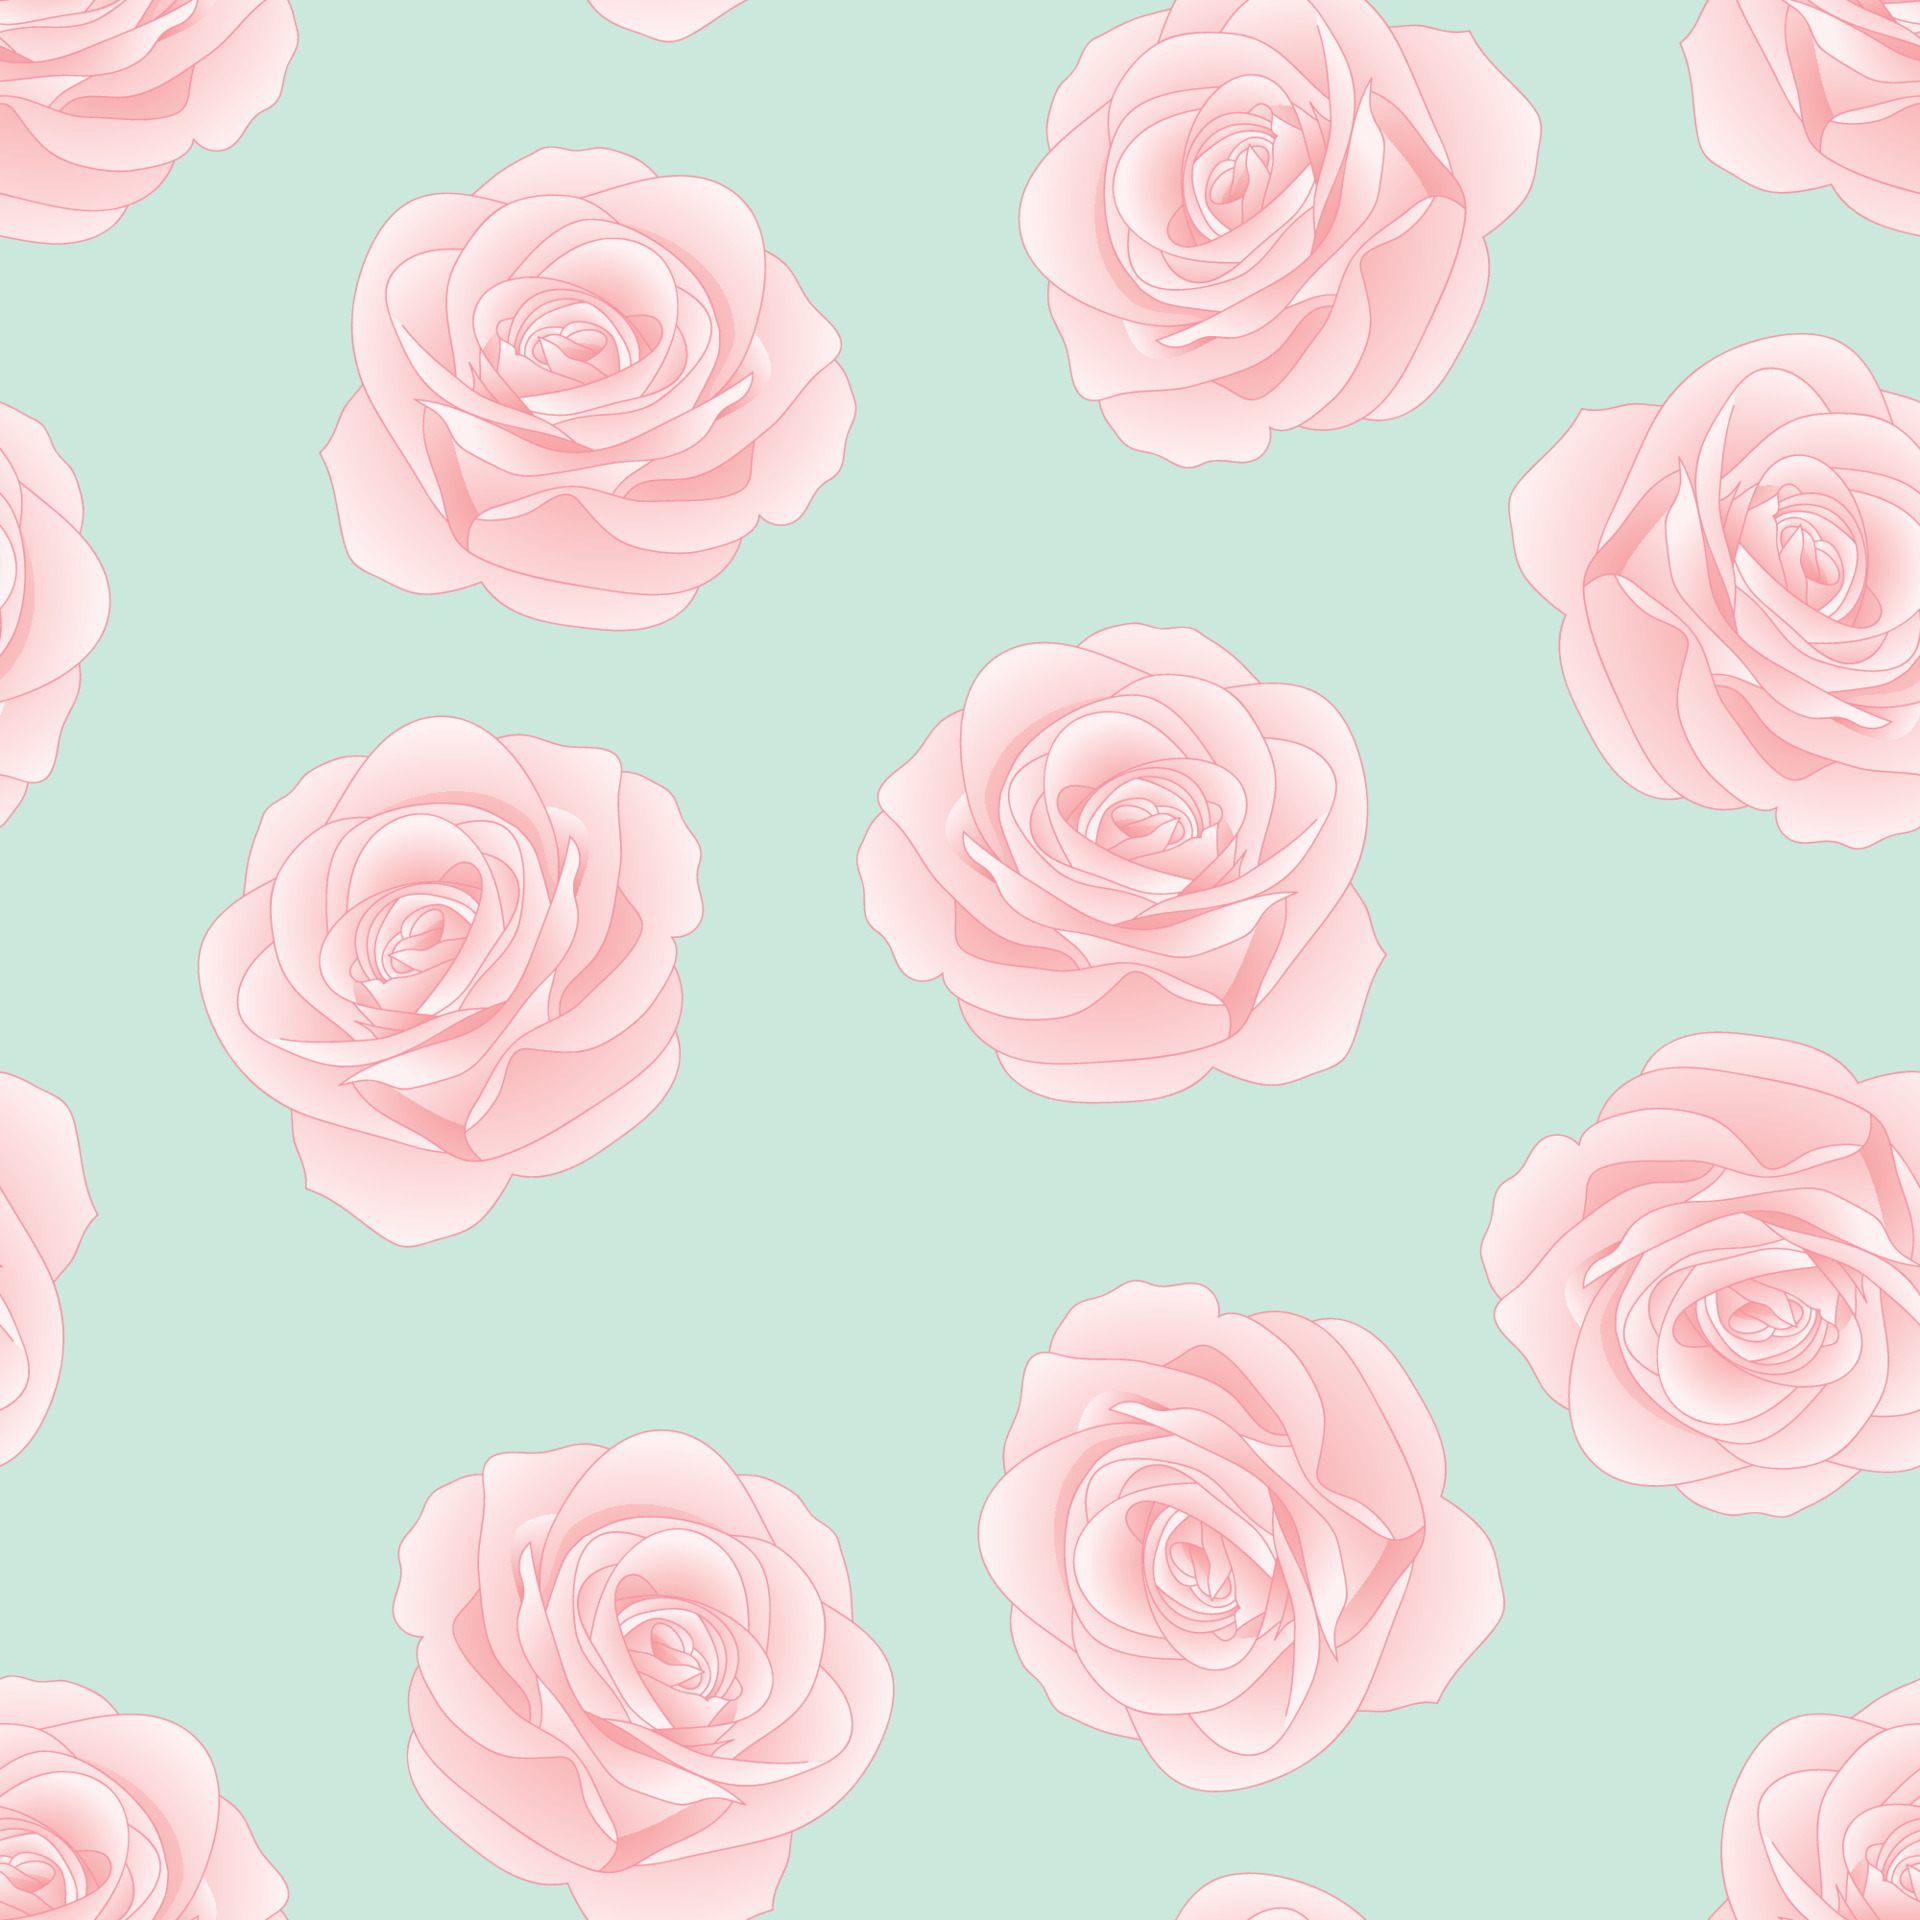 Hình nền hoa hồng màu hồng trên nền xanh lá cây mint đem đến cho bạn một cảm giác của sự rực rỡ và quyến rũ. Hãy tưởng tượng về những thiết kế thời trang, phong cách được tạo nên với màu sắc này. Nếu bạn yêu thích sự quyến rũ và đầy thú vị, không nên bỏ qua những hình nền này.